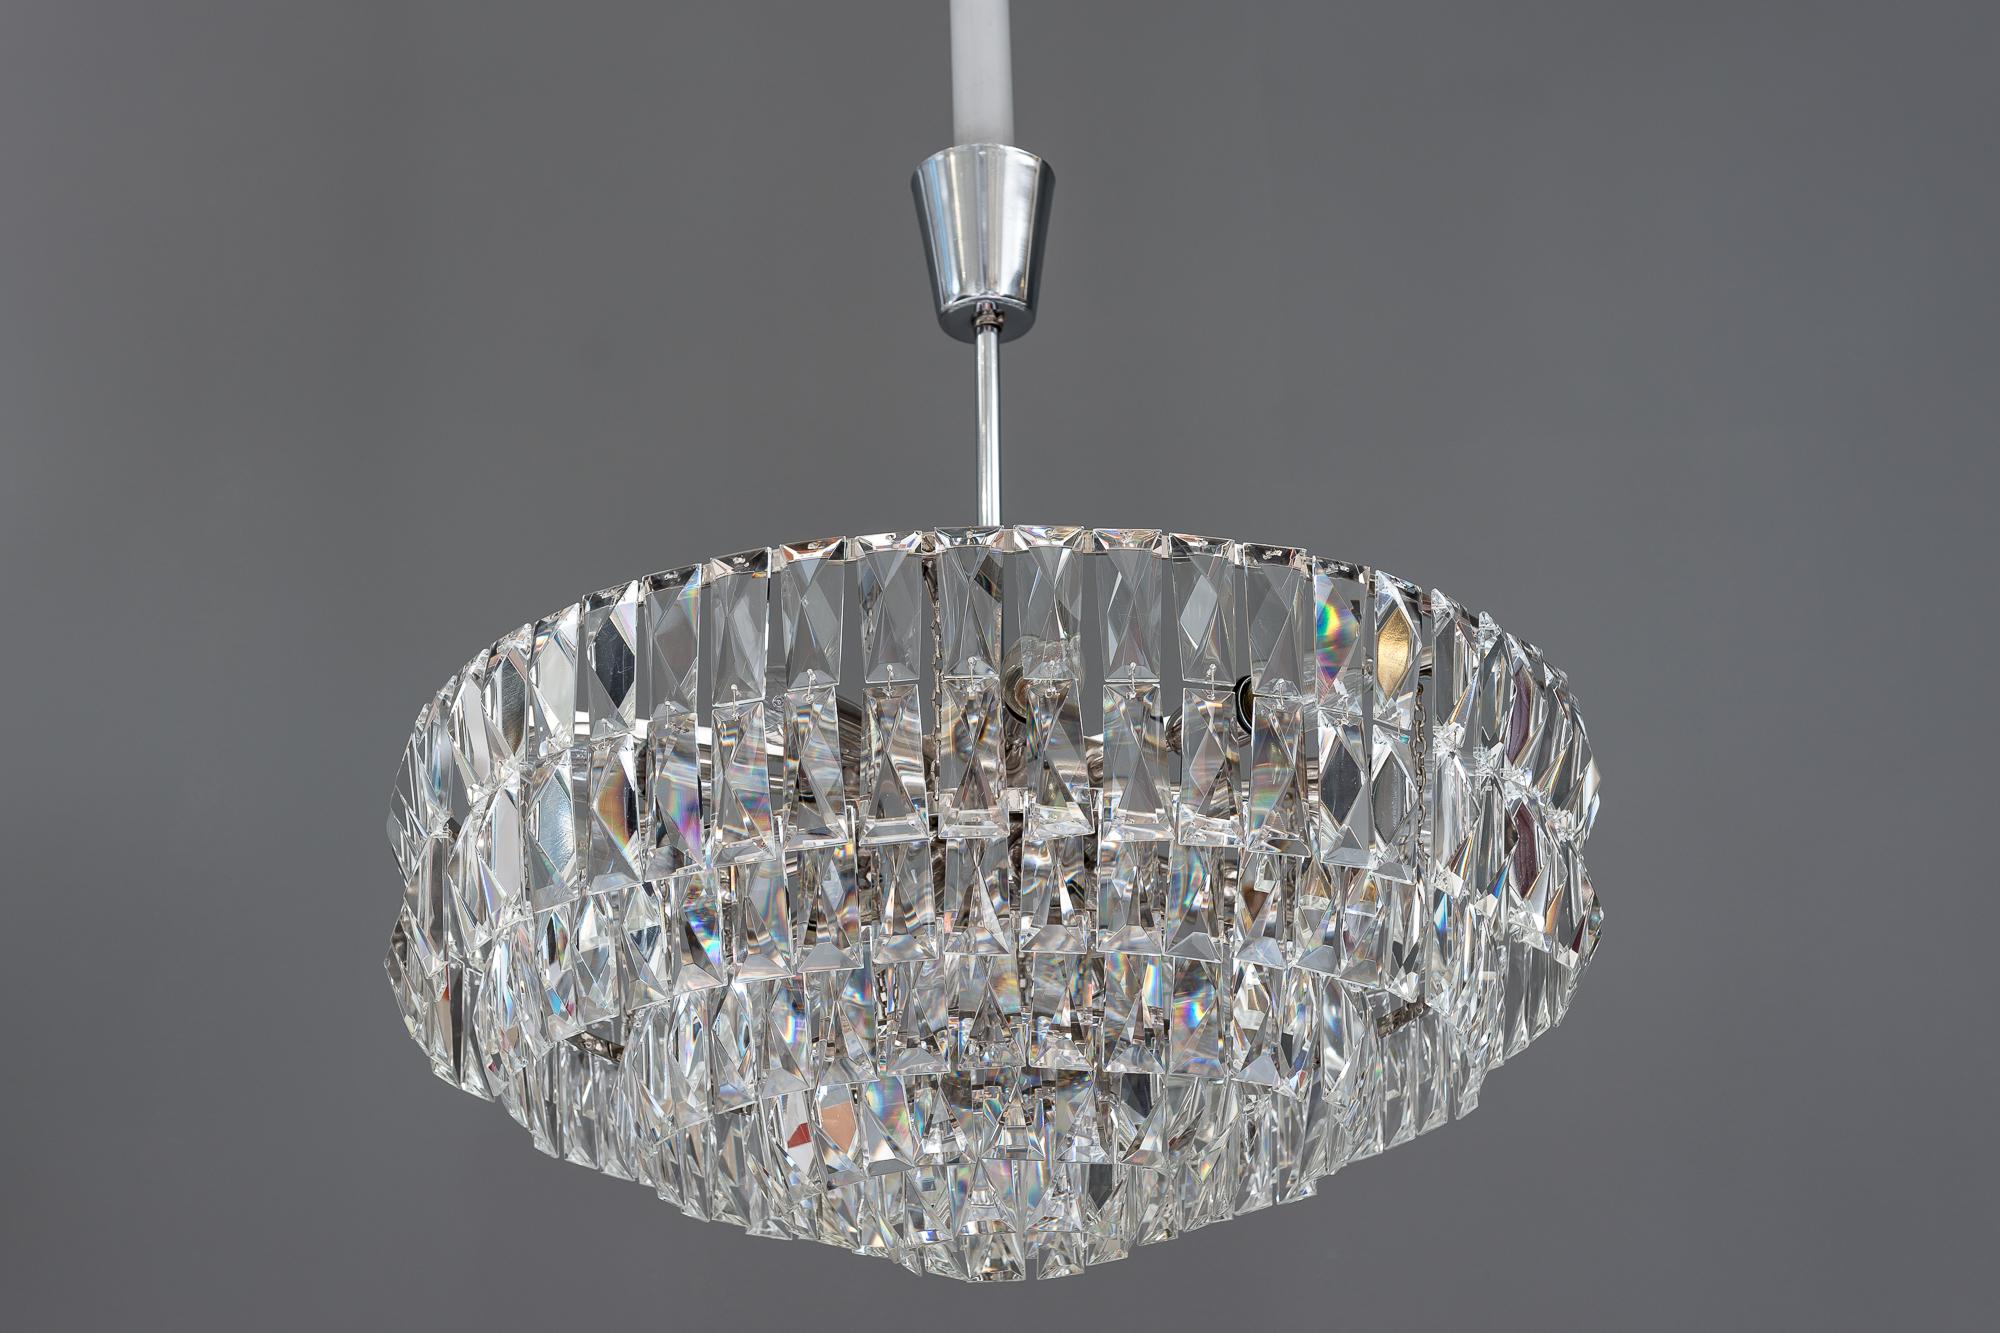 Big Bakalowits crystal chandelier, circa 1960s
Original condition.